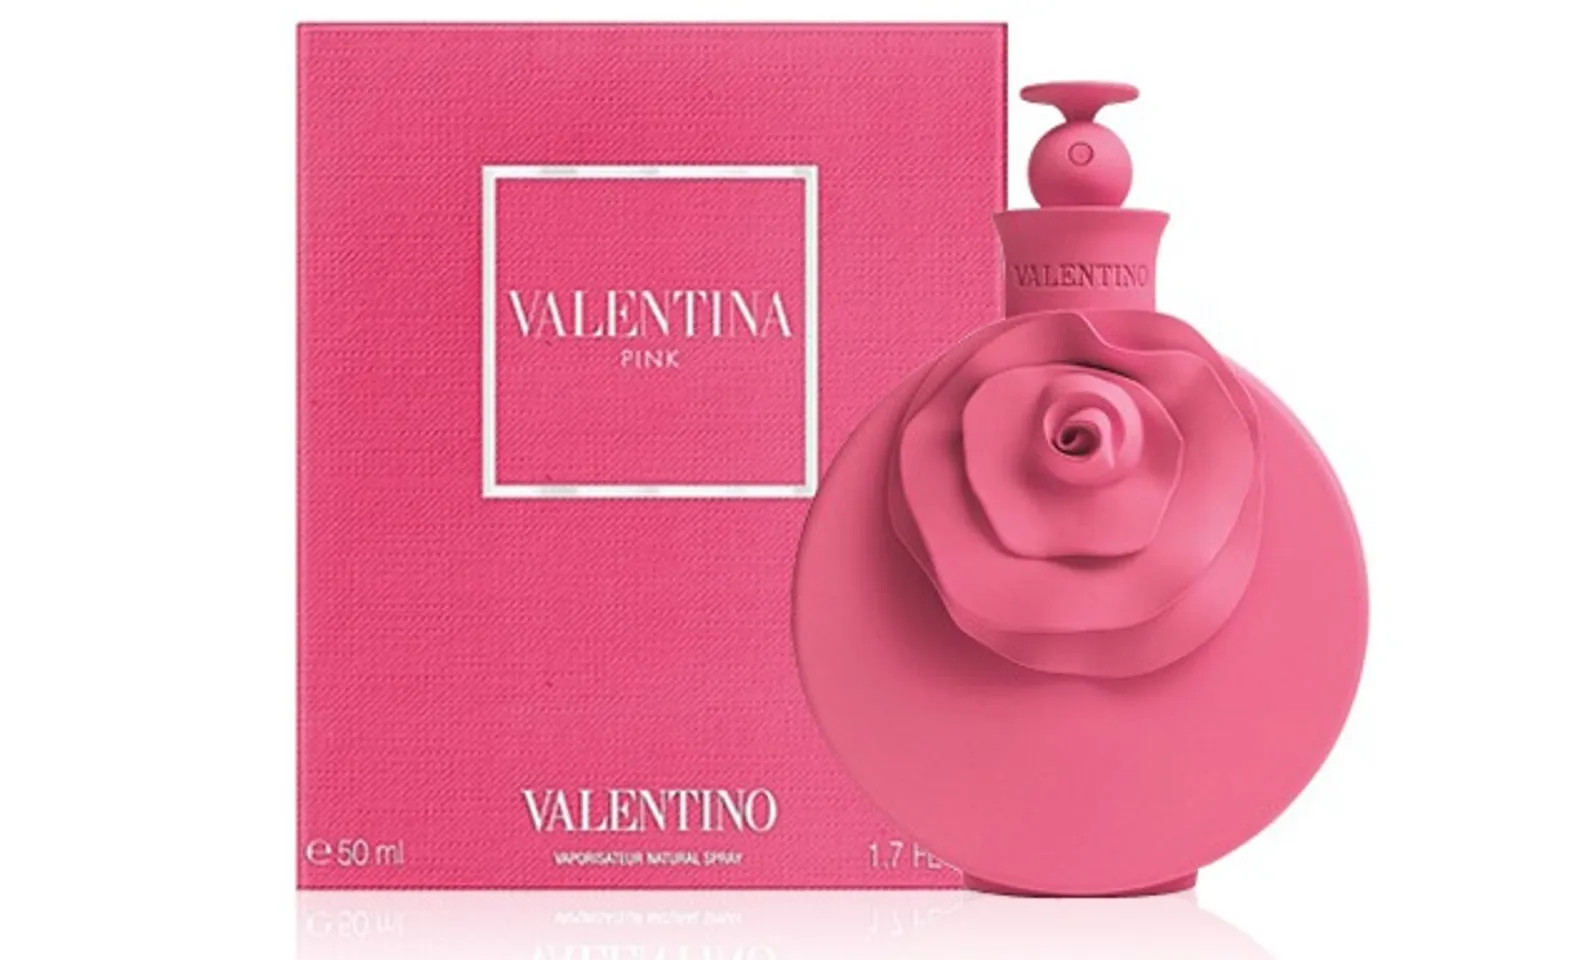 Nước hoa Valentino Valentina Pink thiết kế chai màu hồng nổi bật và ấn tượng